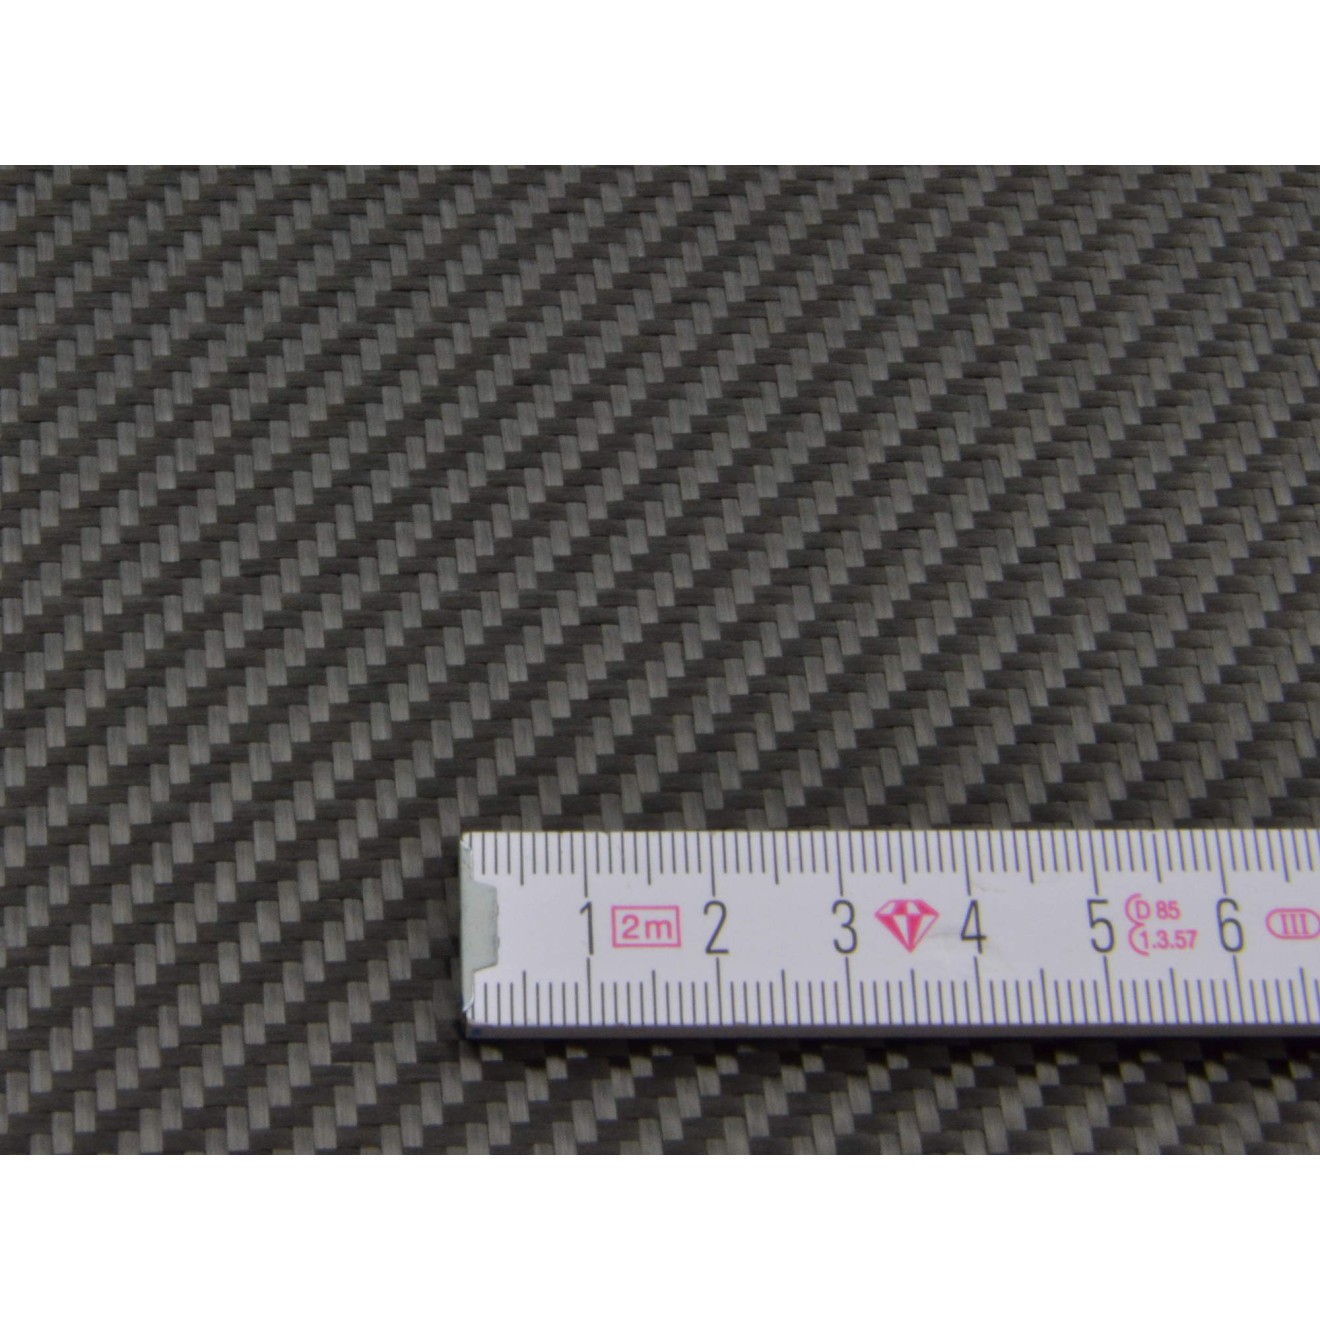 Woven carbon fiber fabric 3K 245g/m² twill2/2, width 500mm, B-Stock